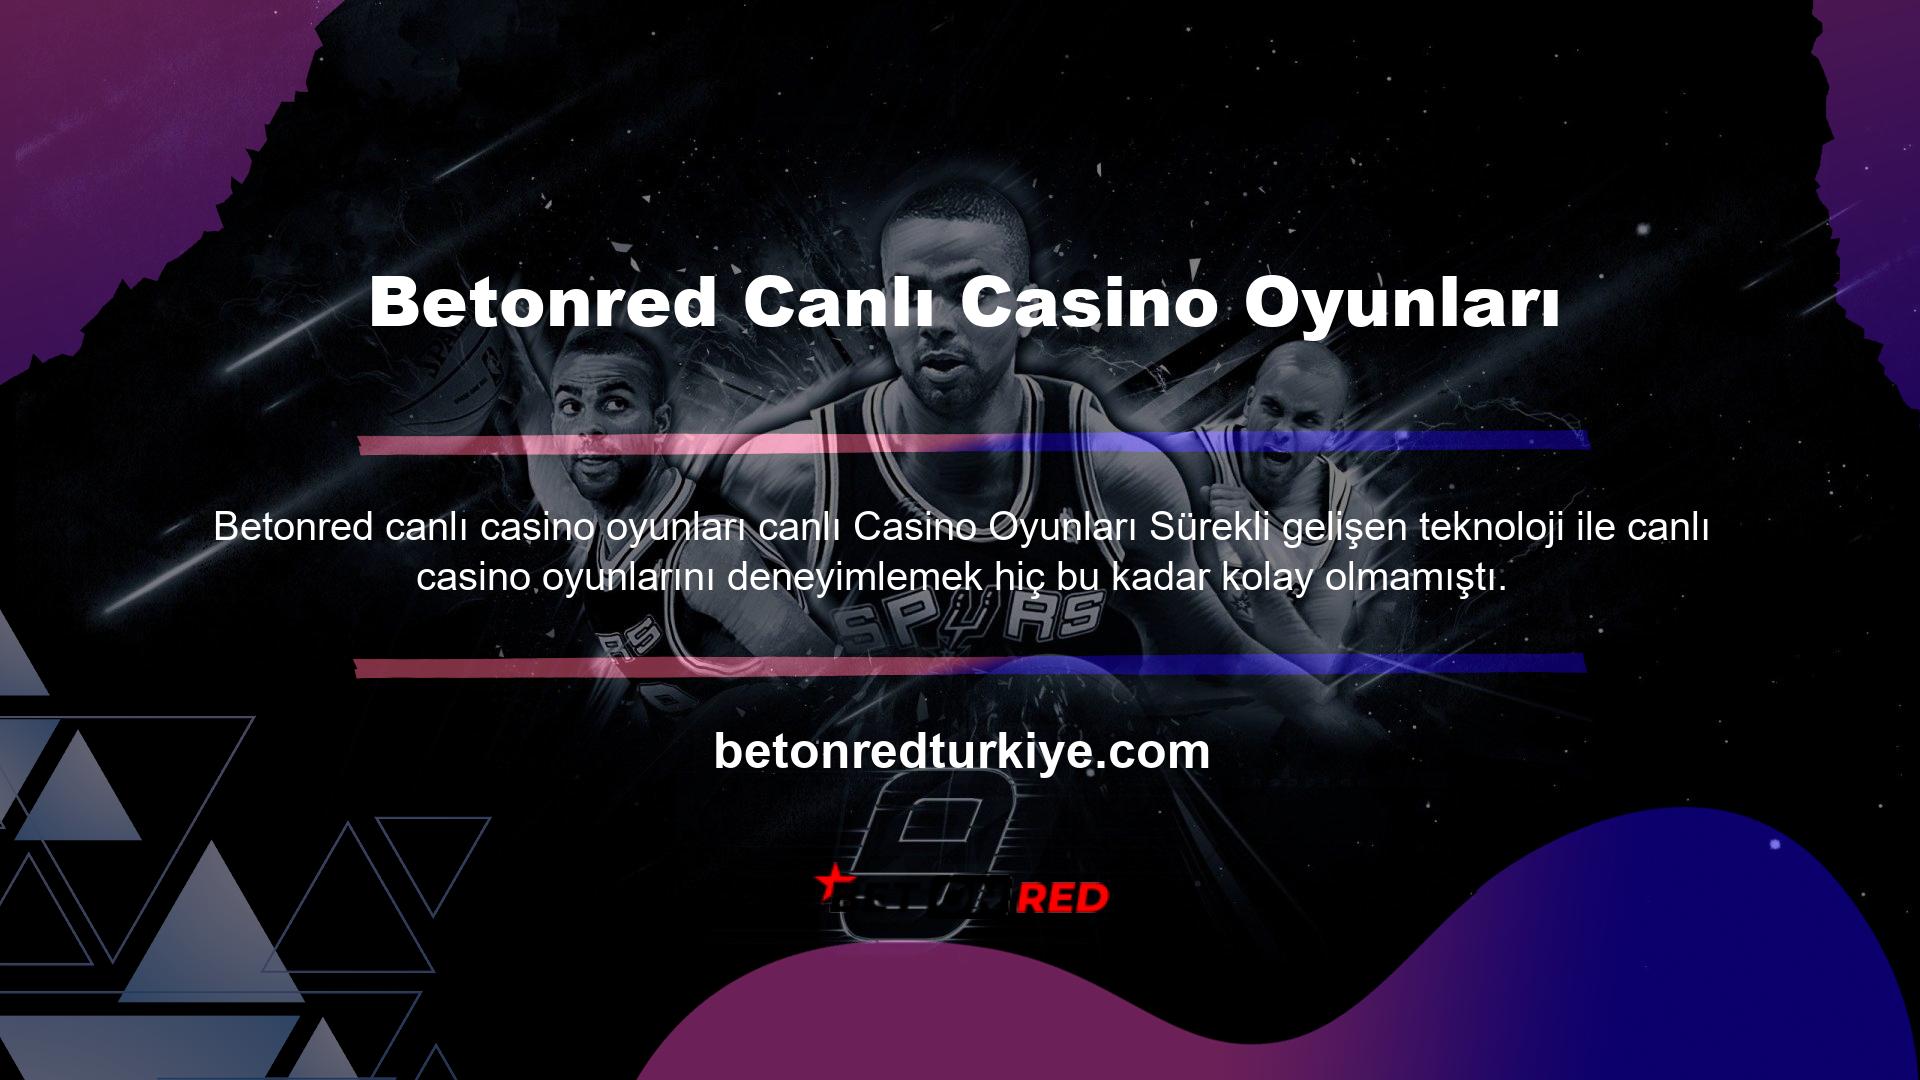 Betonred Oyun Sitesi canlı casino hizmeti ile kullanıcılarına oldukça başarılı bir casino hizmeti sunmaktadır